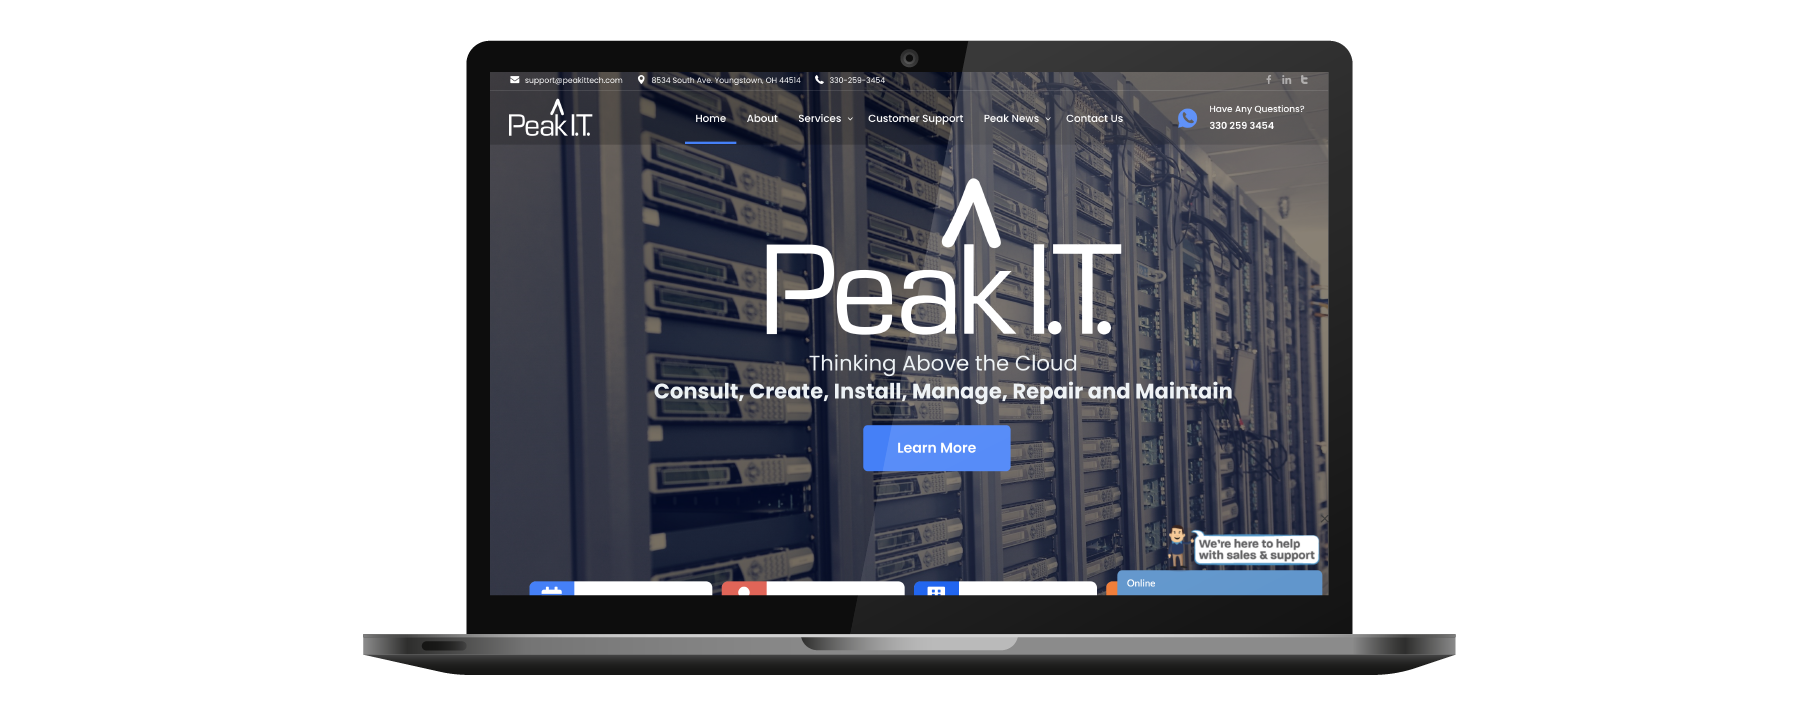 Peak I.T. Website on Laptop